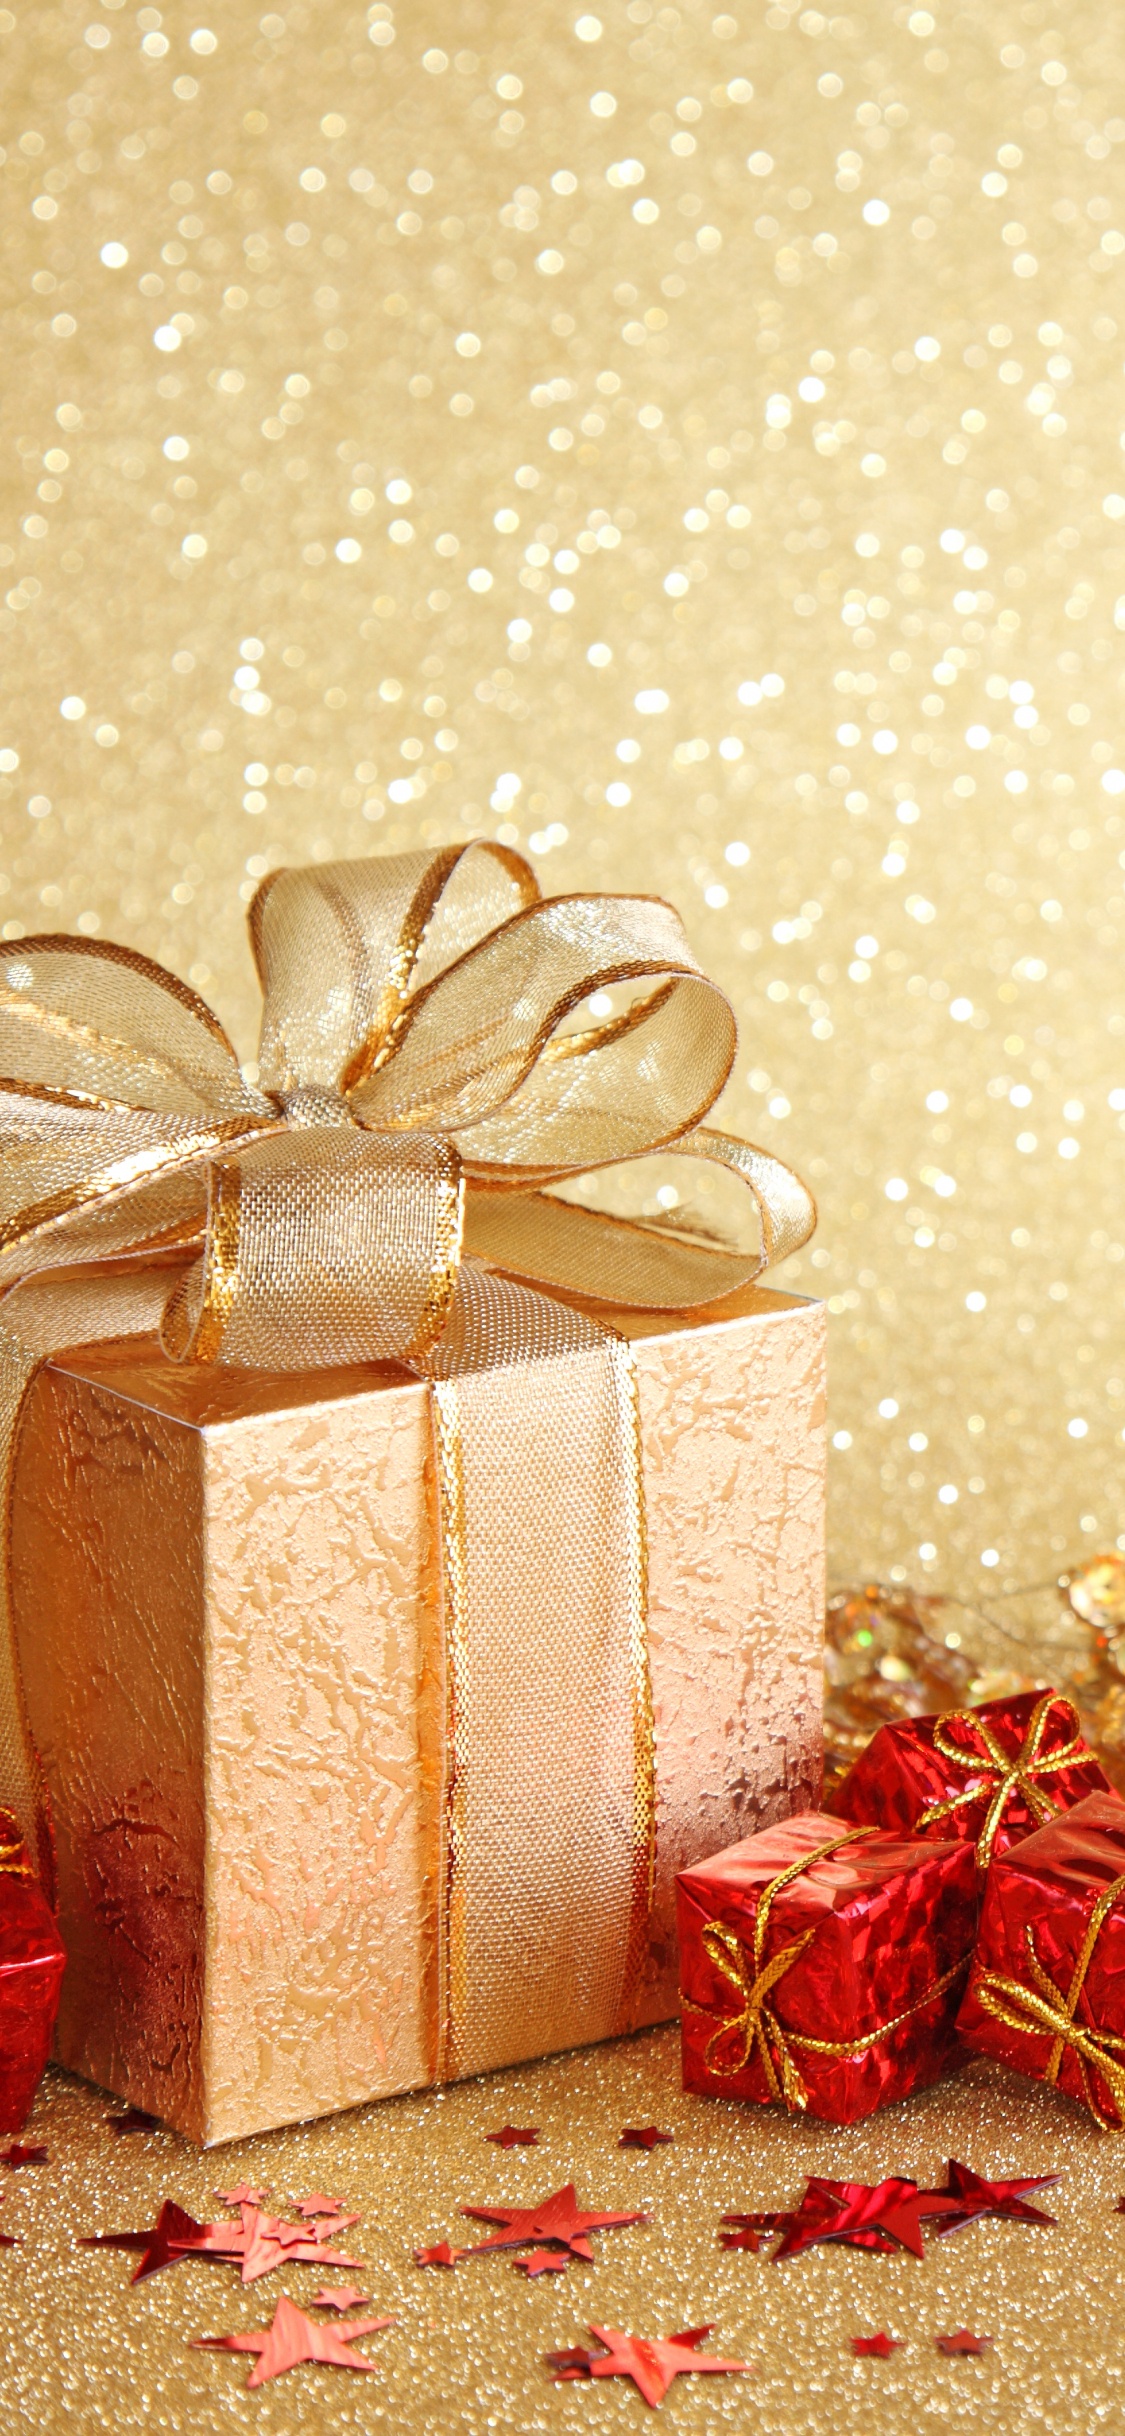 新的一年, 圣诞节那天, 礼品包装, 丝带, 圣诞装饰 壁纸 1125x2436 允许